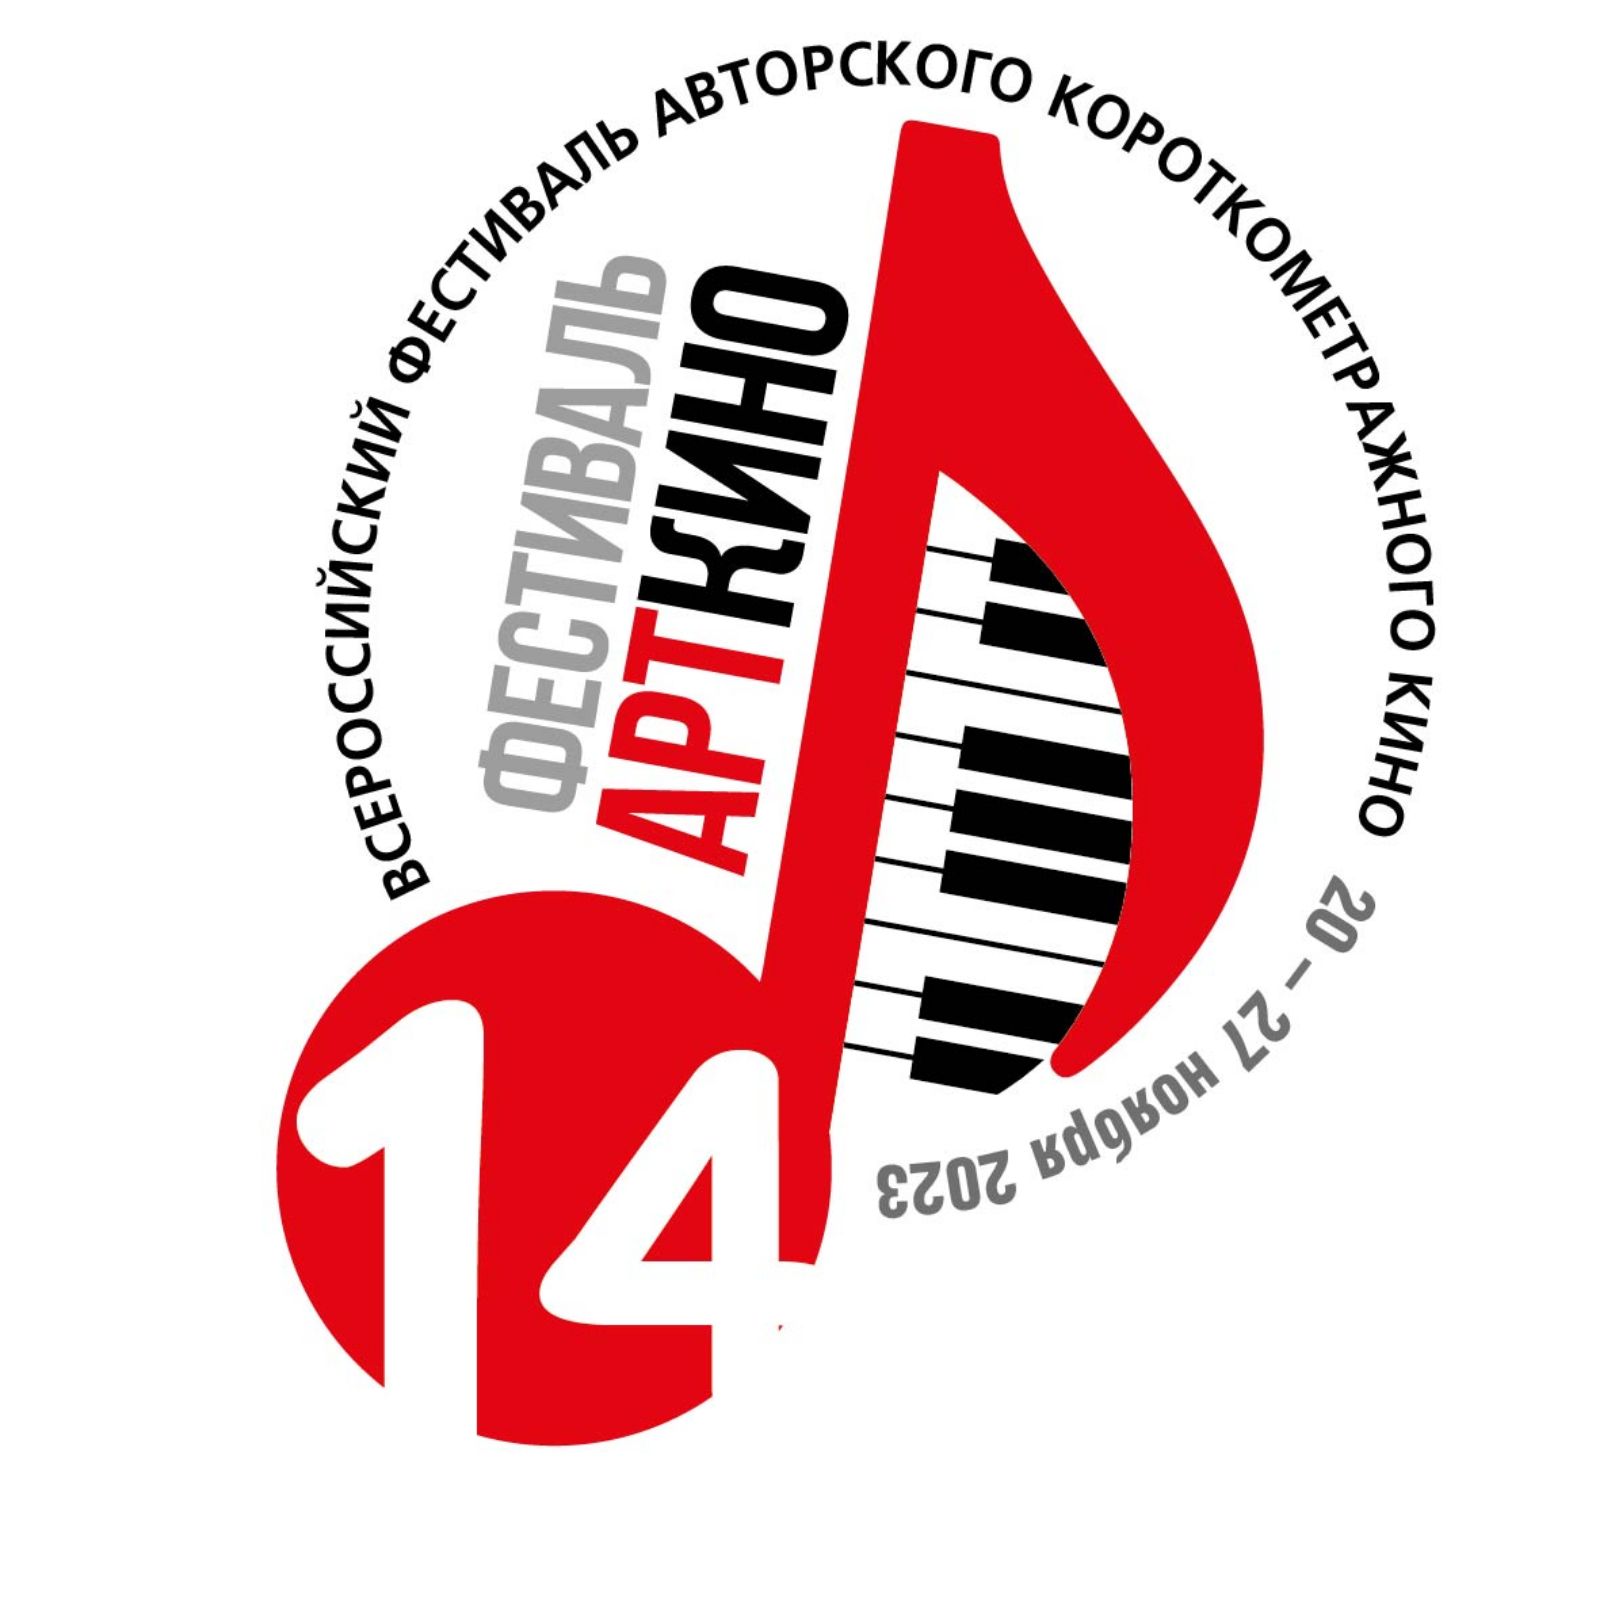 Всероссийский фестиваль авторского короткометражного кино «Арткино» пройдет при поддержке НФПП